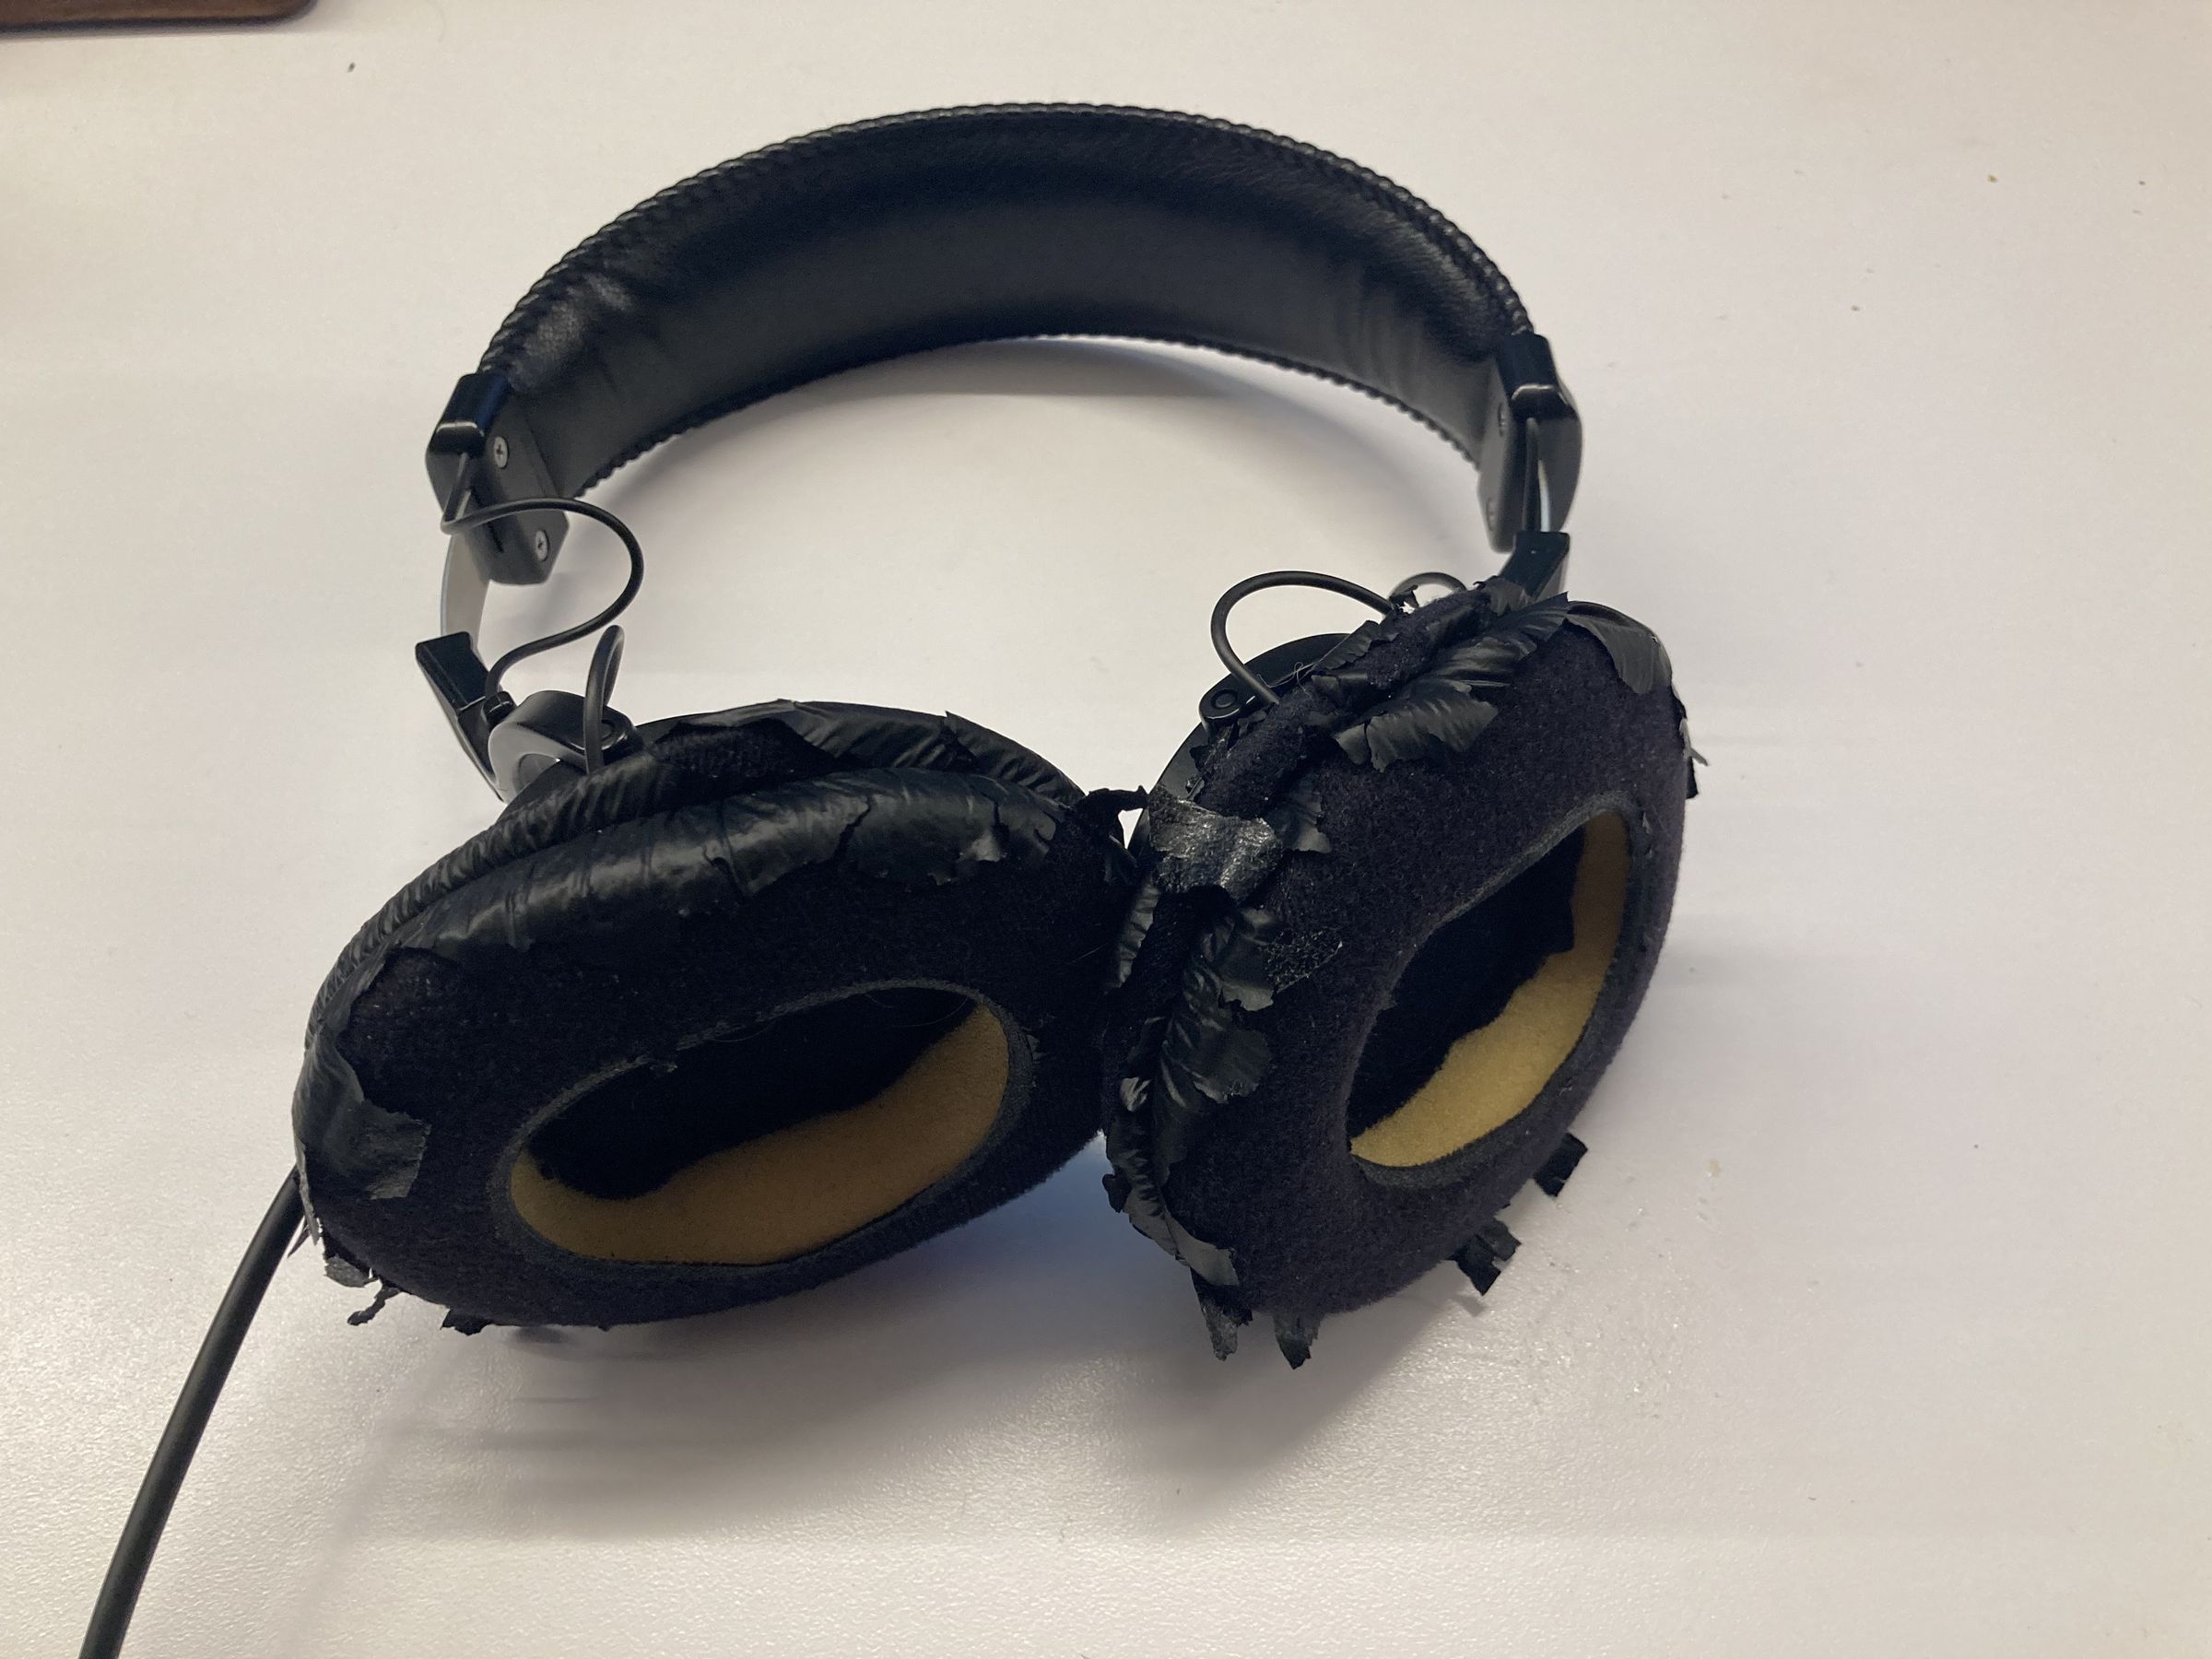 Sepasang Sony MDR-7506 dengan bantalan headphone yang rusak parah.